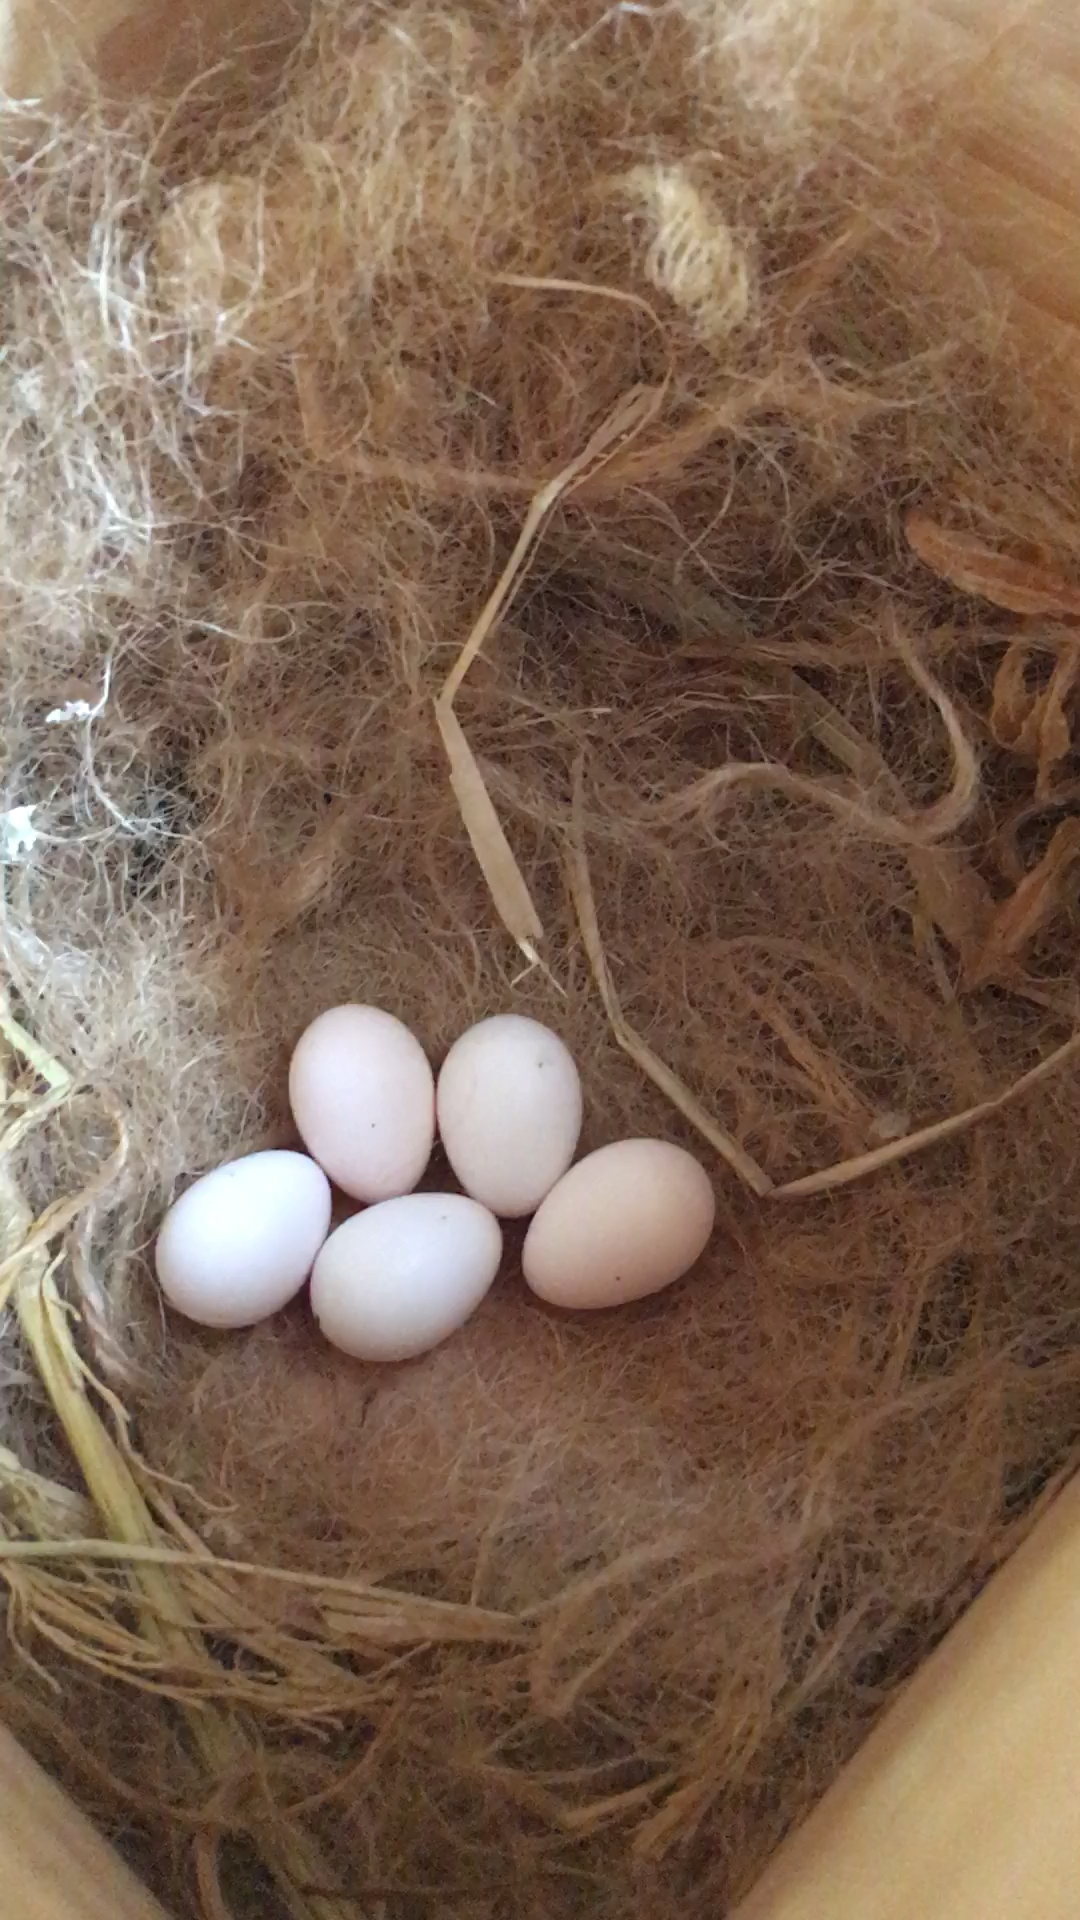 小麻雀又下了5颗蛋了!